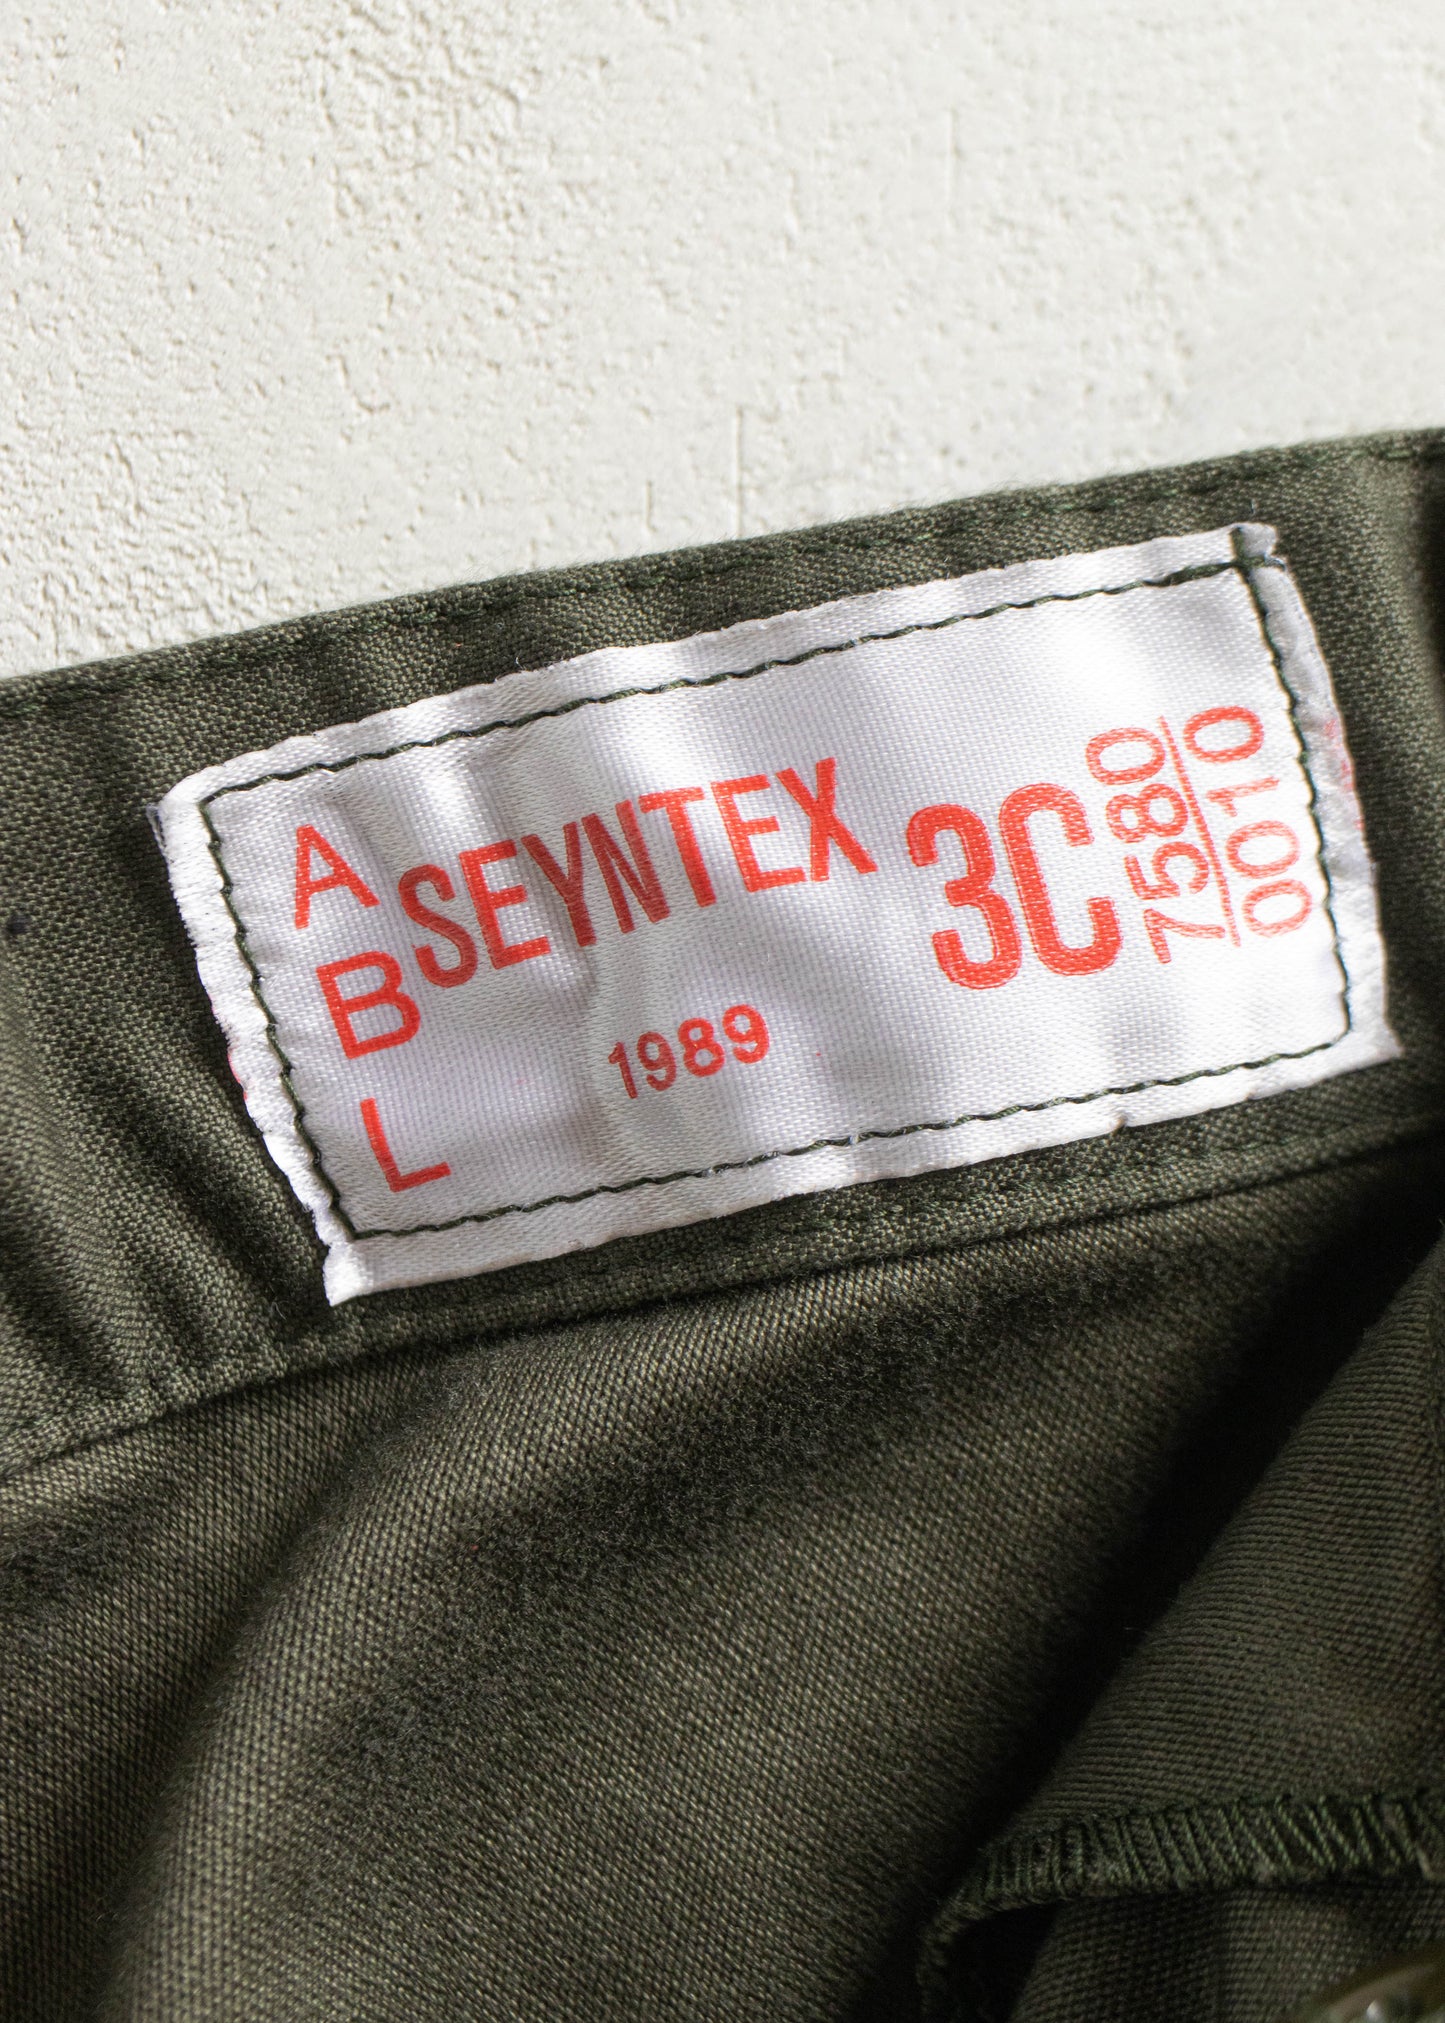 Vintage 1980s Military Cargo Pants Size Women's 38 Men's 40